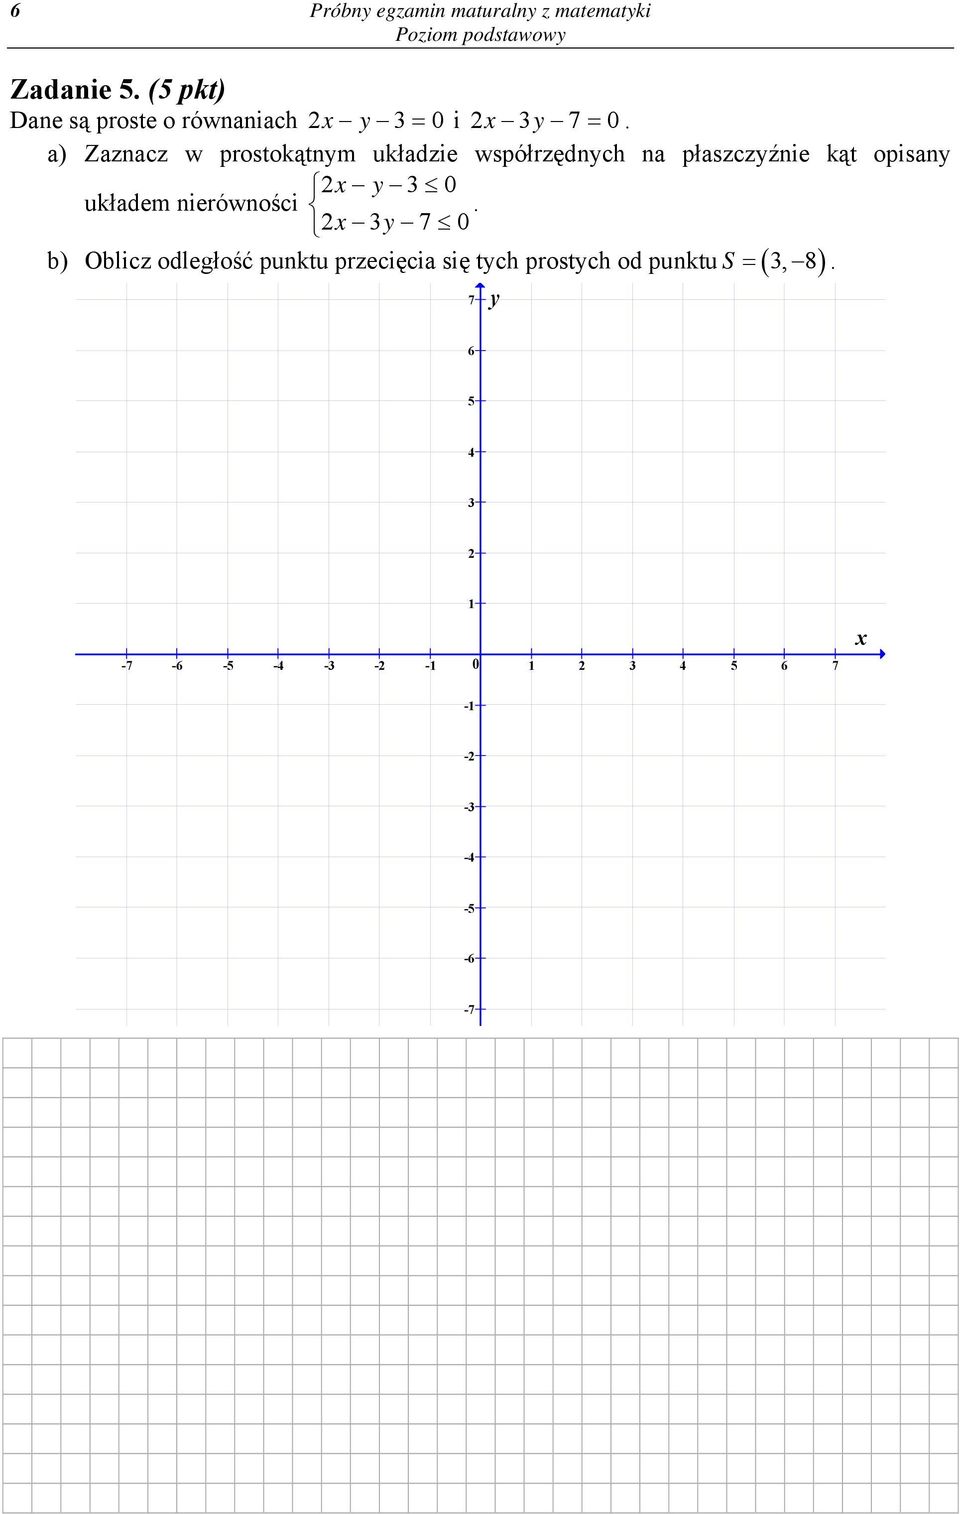 a) Zaznacz w prostokątnym układzie współrzędnych na płaszczyźnie kąt opisany 2x y 3 0 układem